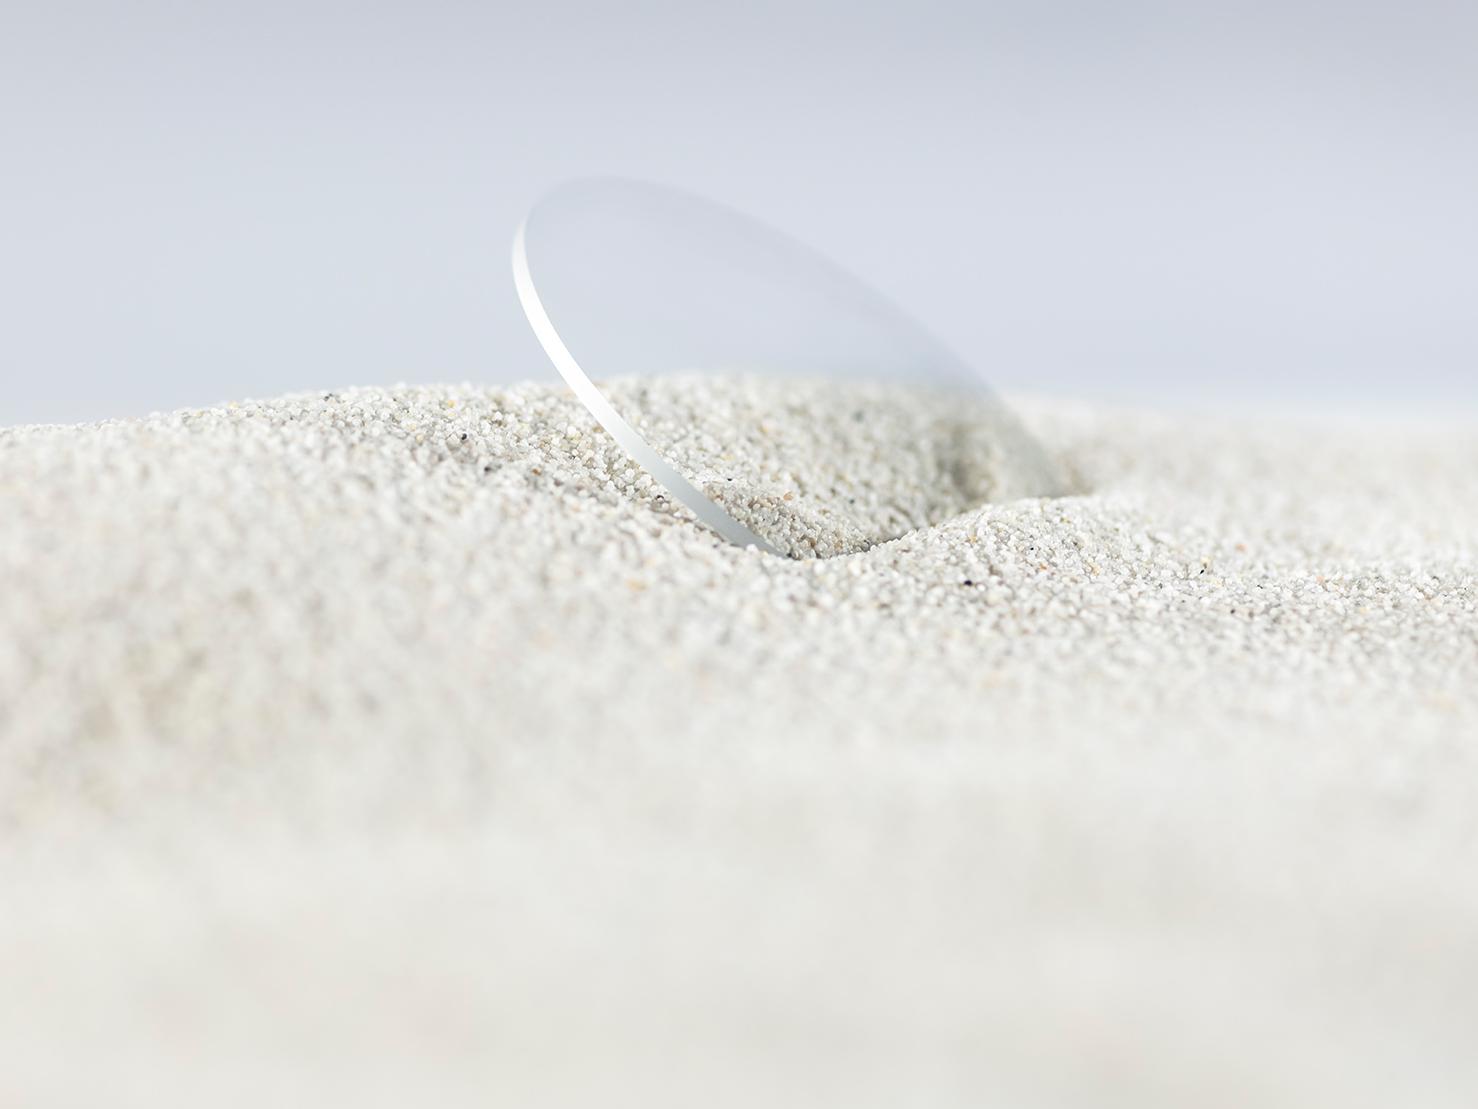 Kestävällä pinnoitteella pinnoitettu ZEISS-linssi on peitetty karkeaan hiekkaan mutta on silti naarmuton.